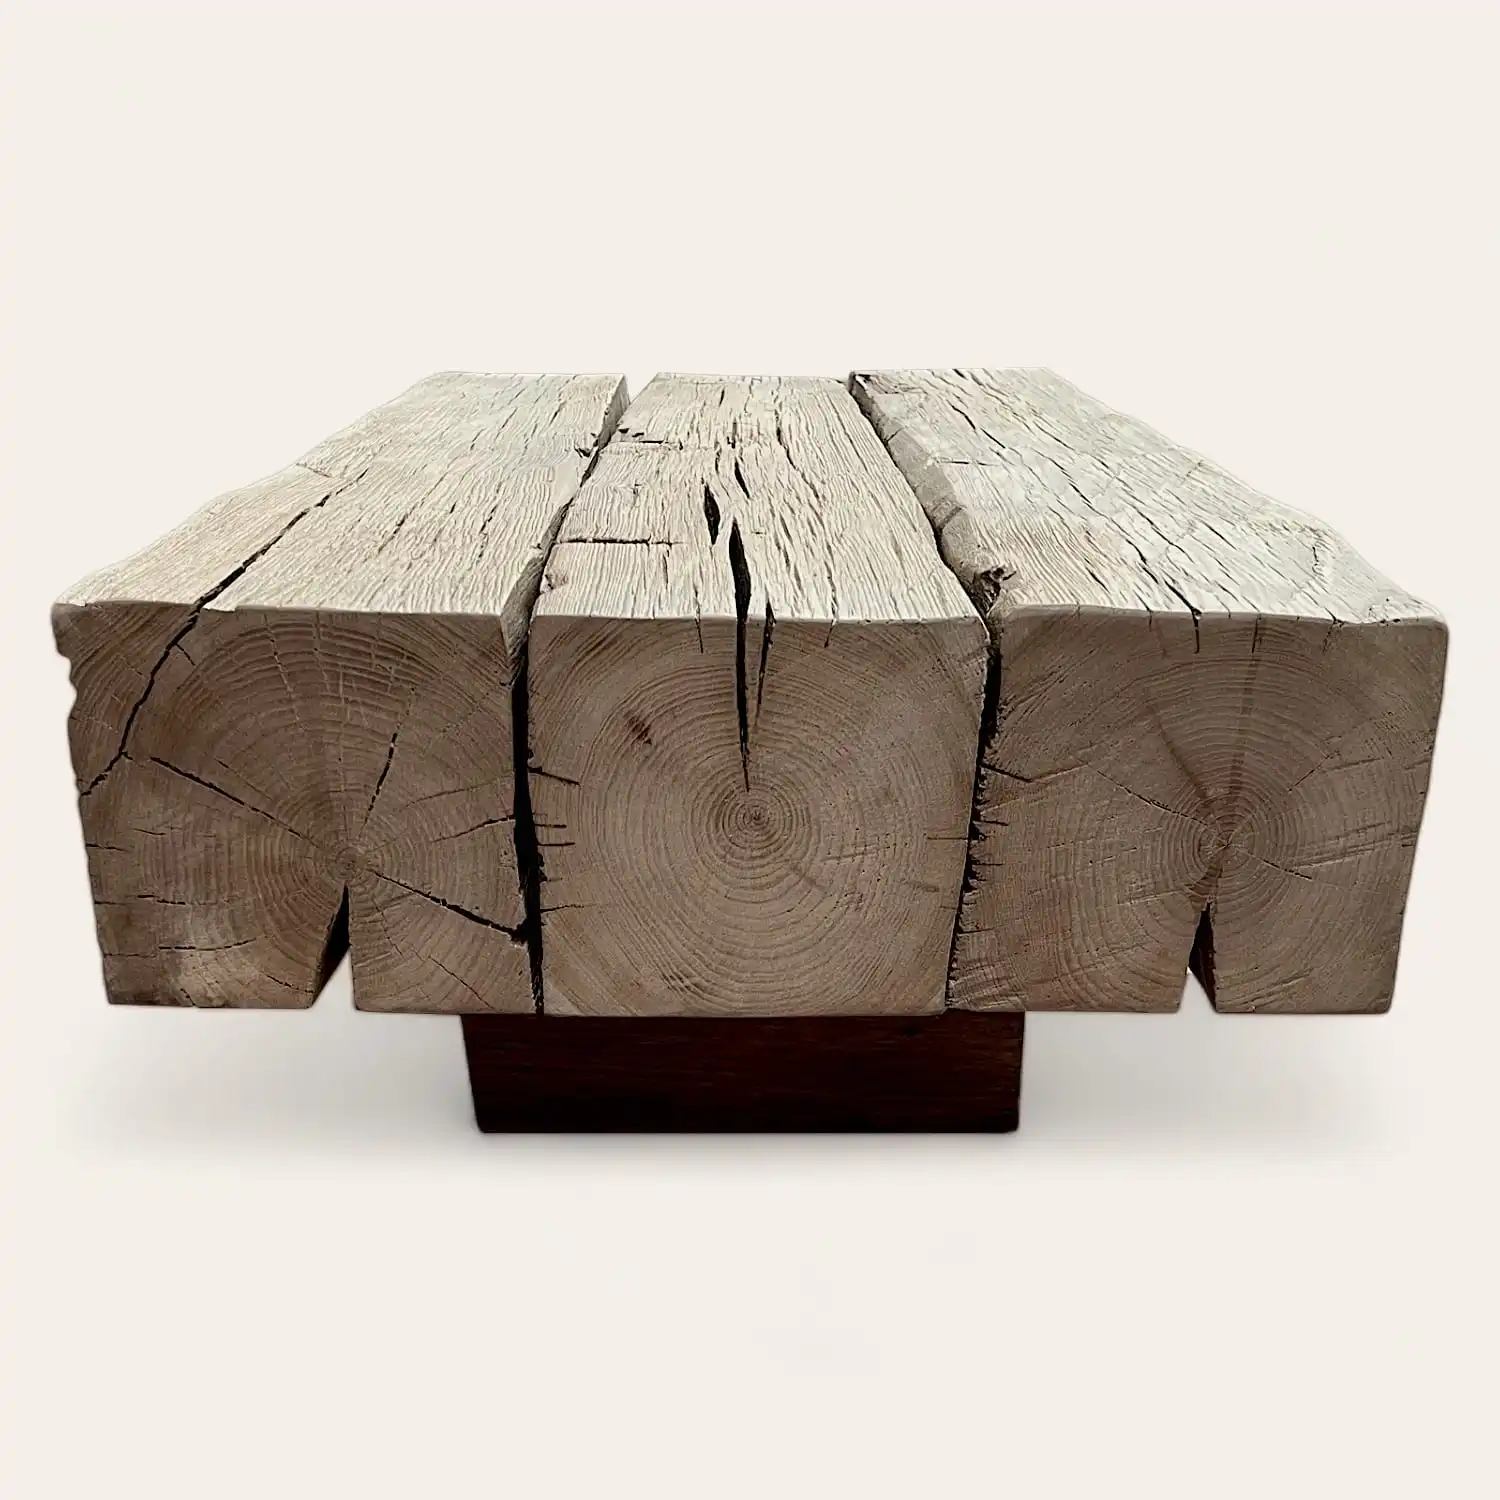  Une table basse rustique faite de rondins de bois. 